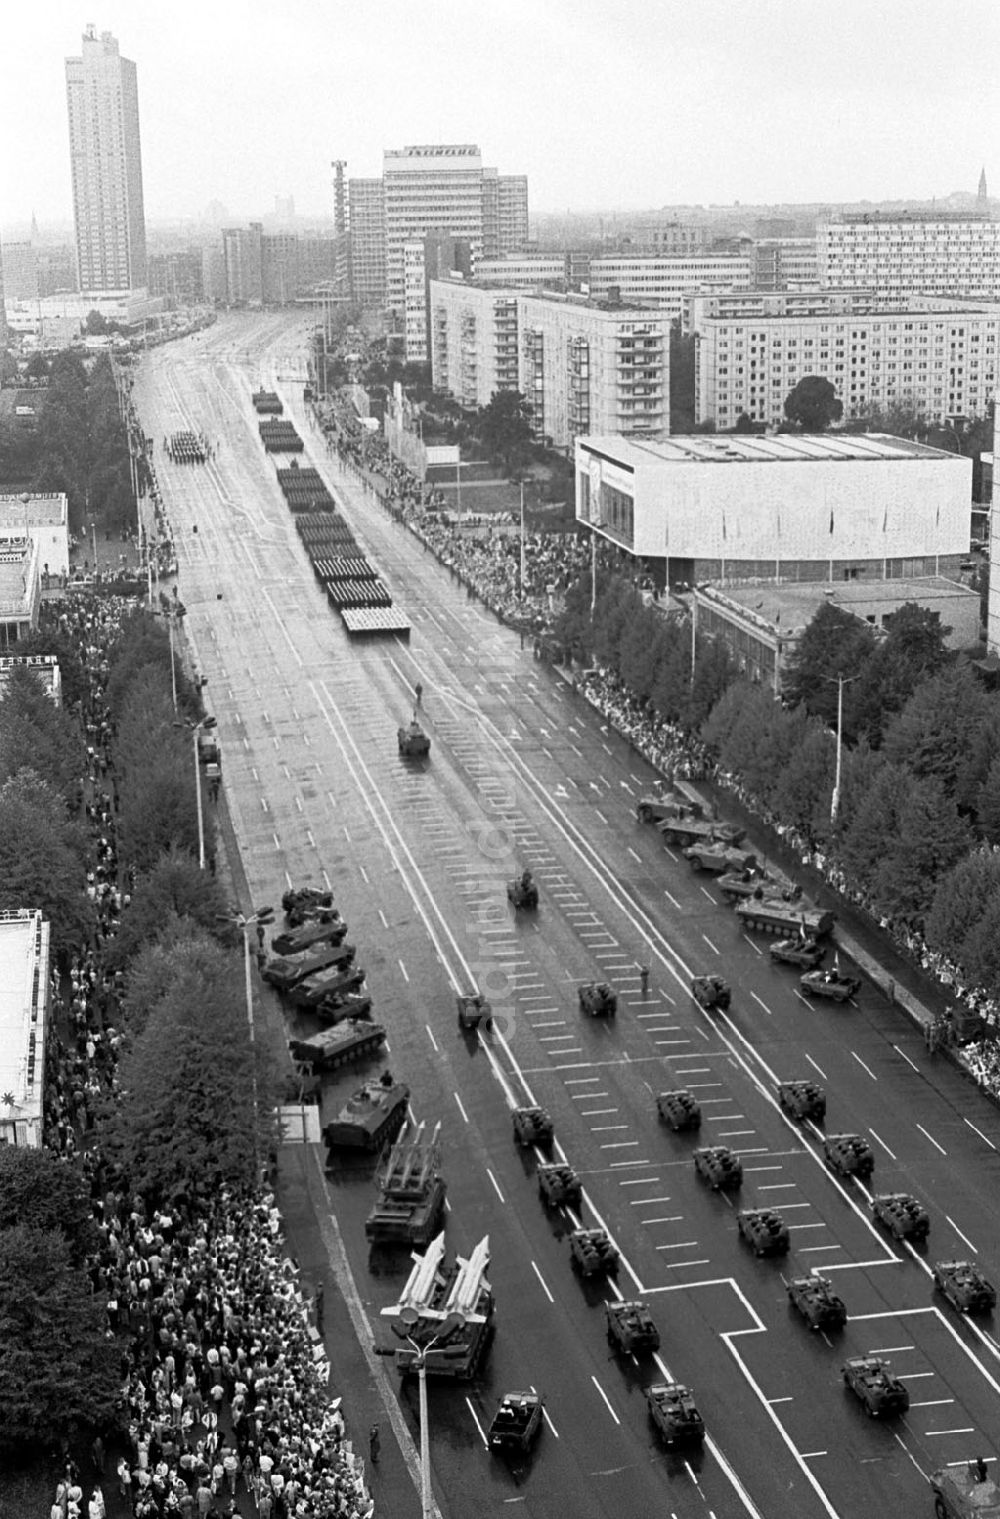 DDR-Bildarchiv: Berlin-Friedrichshain - Parade zum 40. Jahrestag der DDR vom Haus des Kindes 07.10.89 Foto: ND/ Grahn Umschlagnummer: 1192